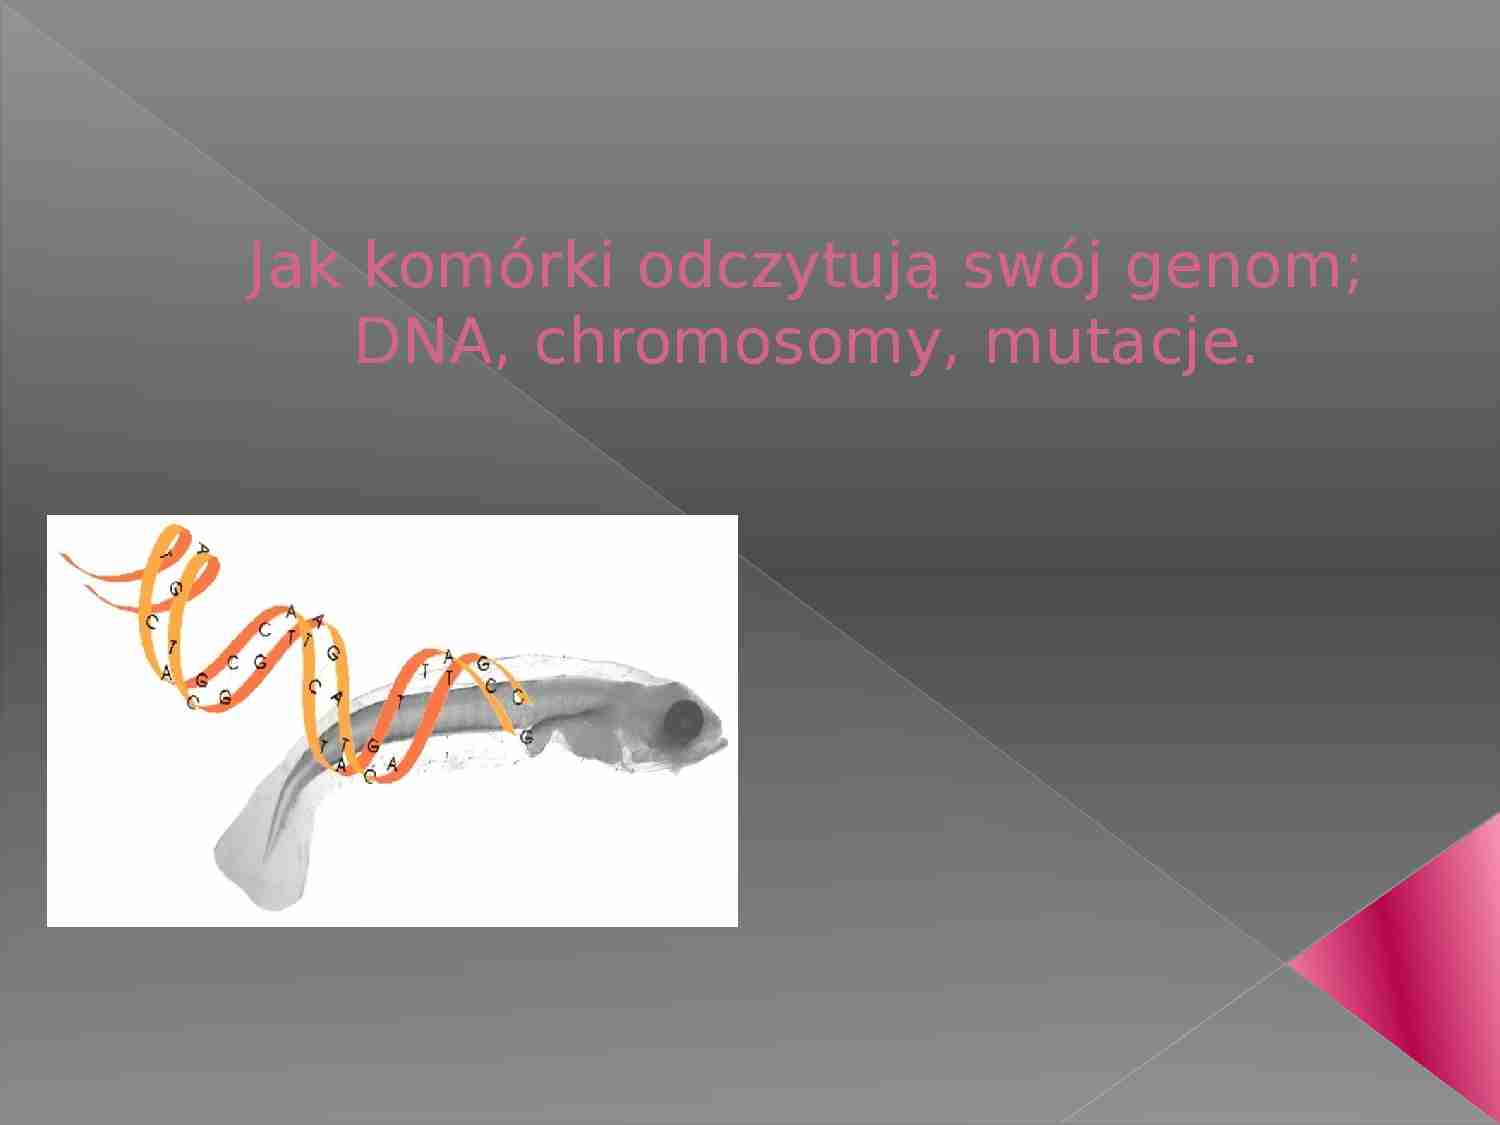 Jak komórki odczytują swój genom; DNA, chromosomy, mutacje - prezentacja - strona 1